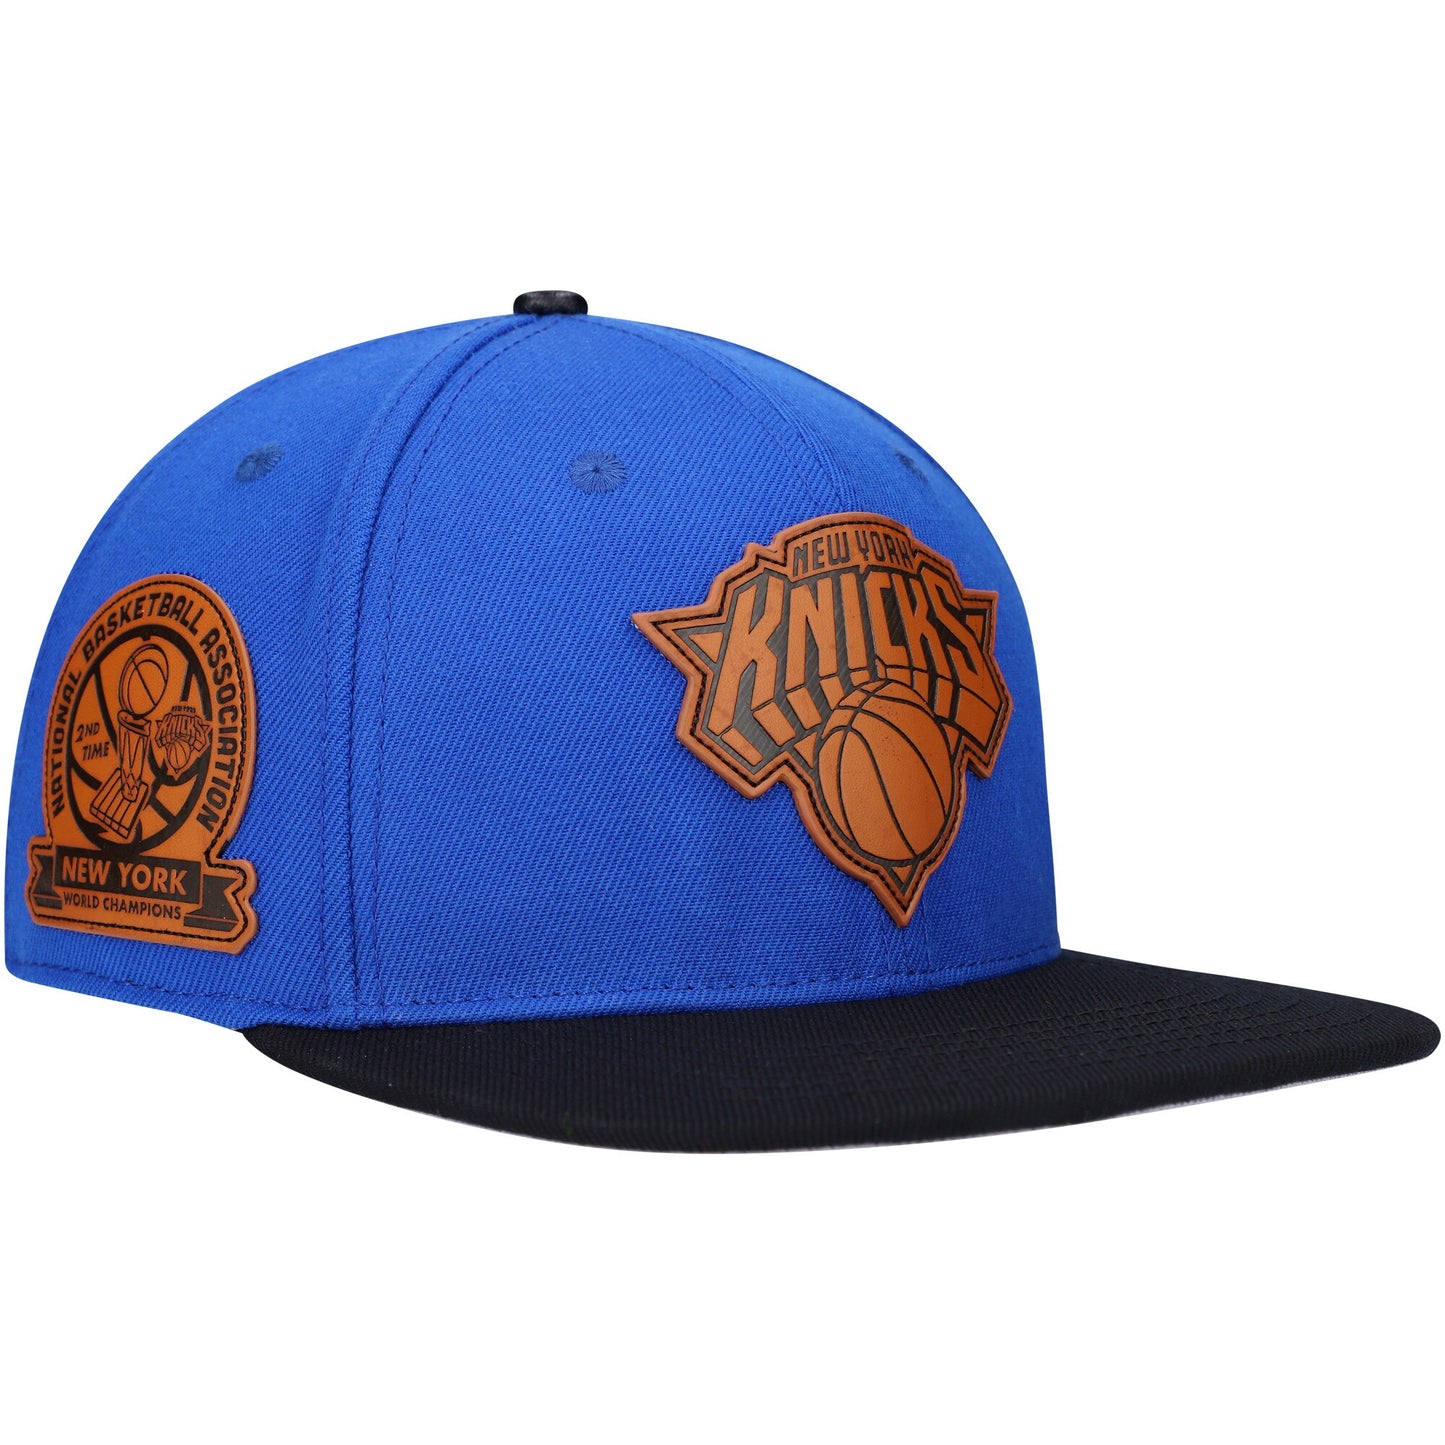 New York Knicks Pro Standard Heritage Leather Patch Snapback Hat - Blue/Black